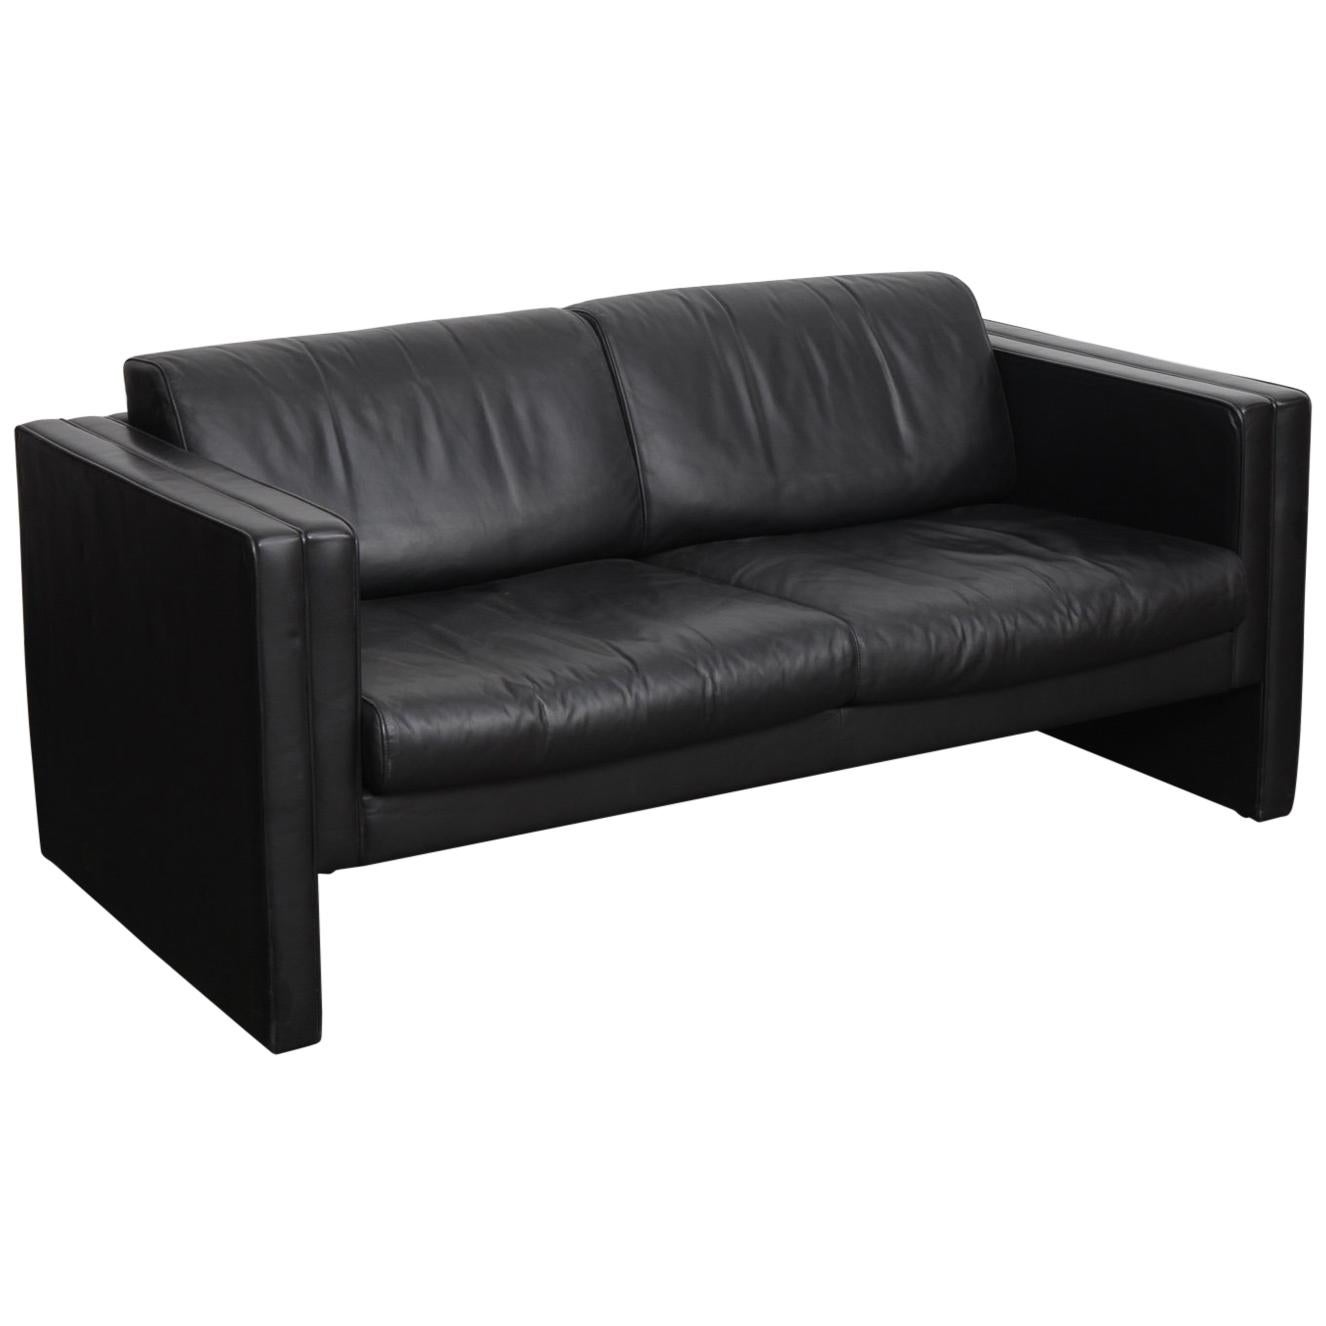 Walter Knoll Studio Line Series black leather sofa designed by Jürgen Lange For Sale